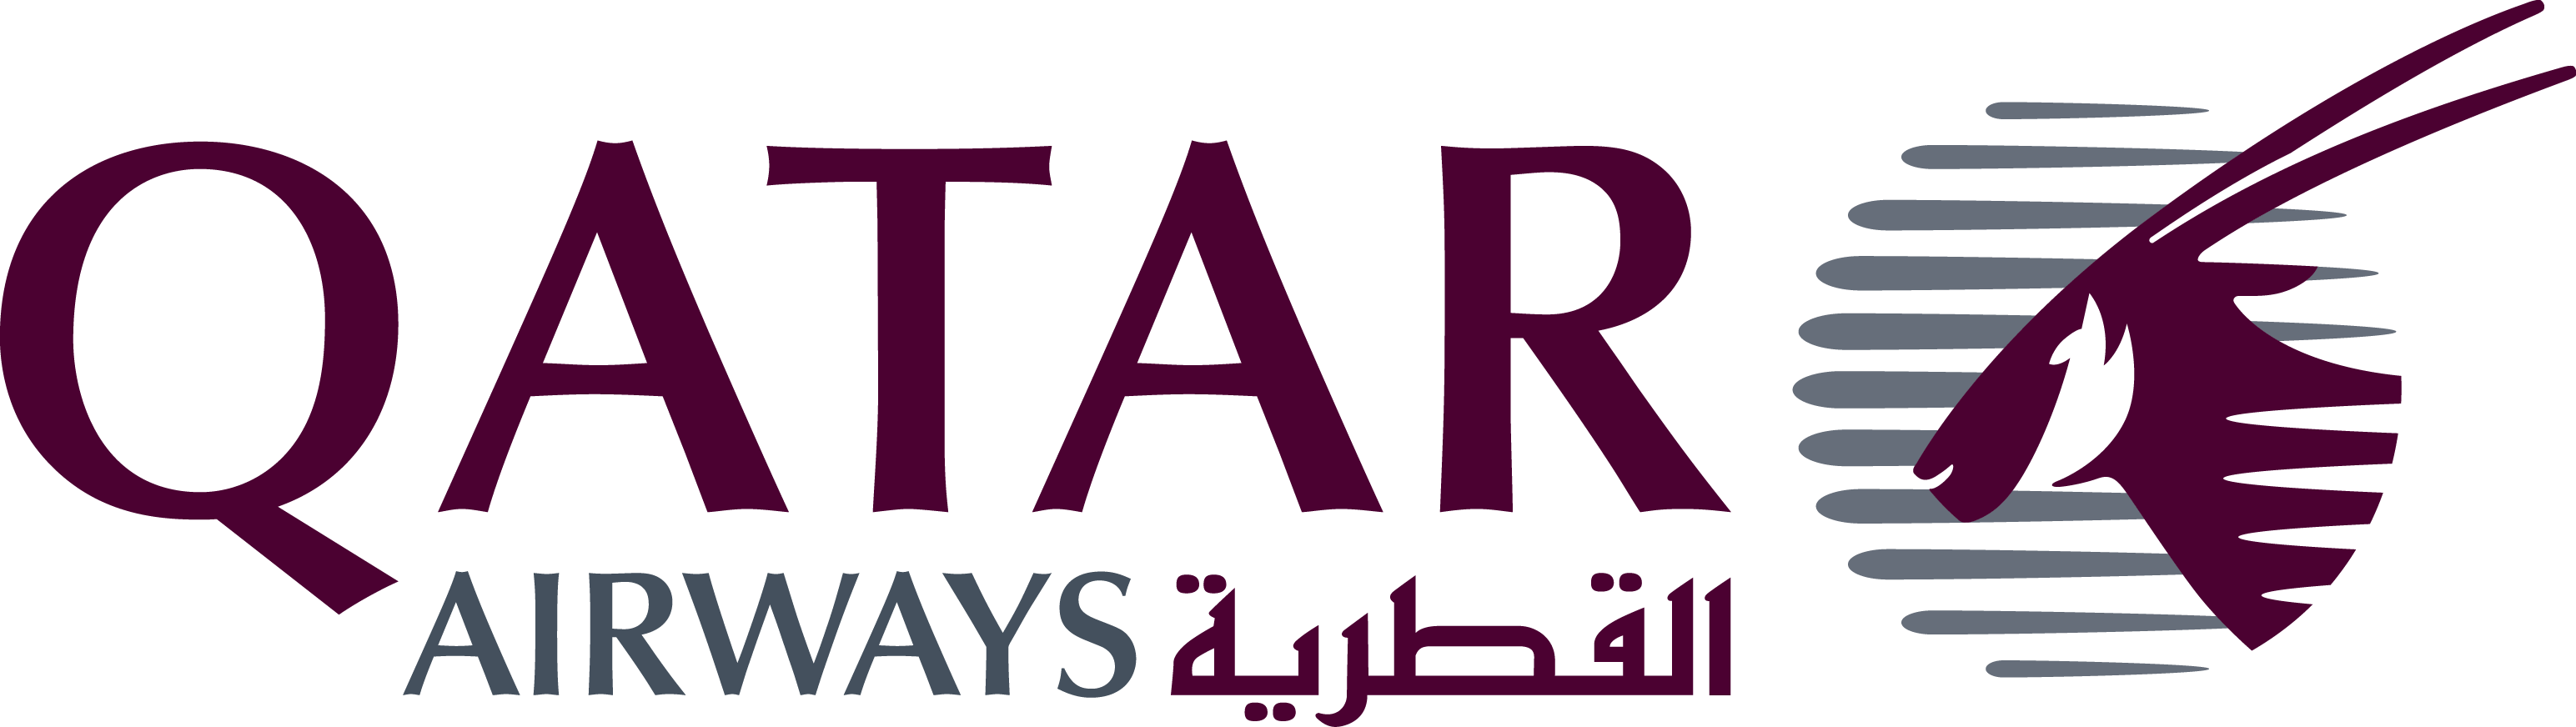 Katarskie Lonie Lotnicze Qatar Airways